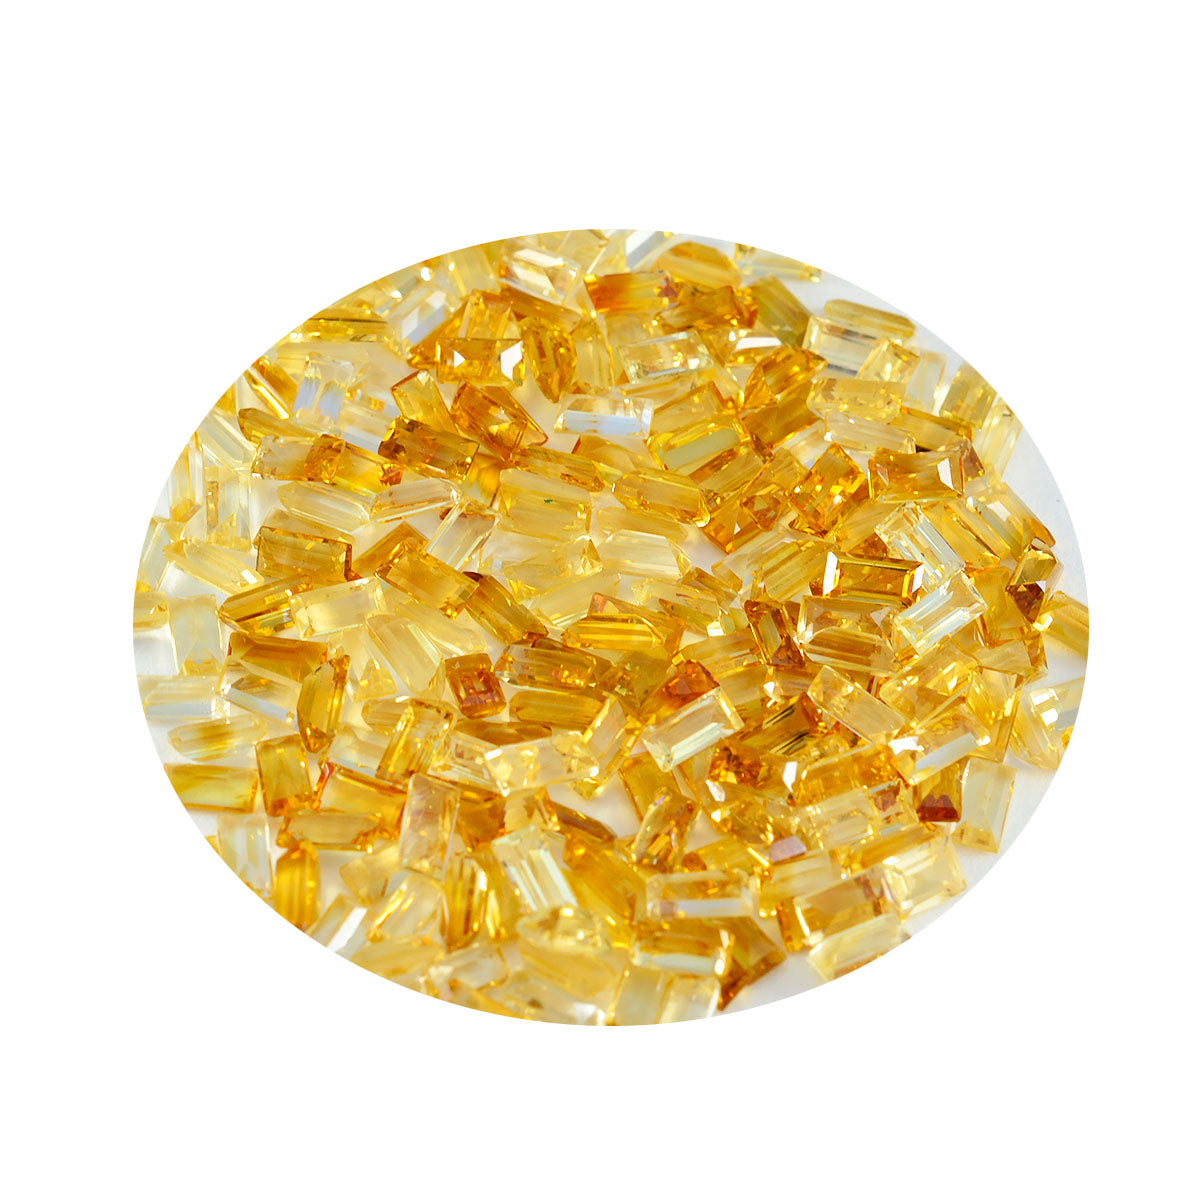 riyogems 1 шт., настоящие желтые цитрины, ограненные 2x4 мм, в форме багета, драгоценные камни замечательного качества